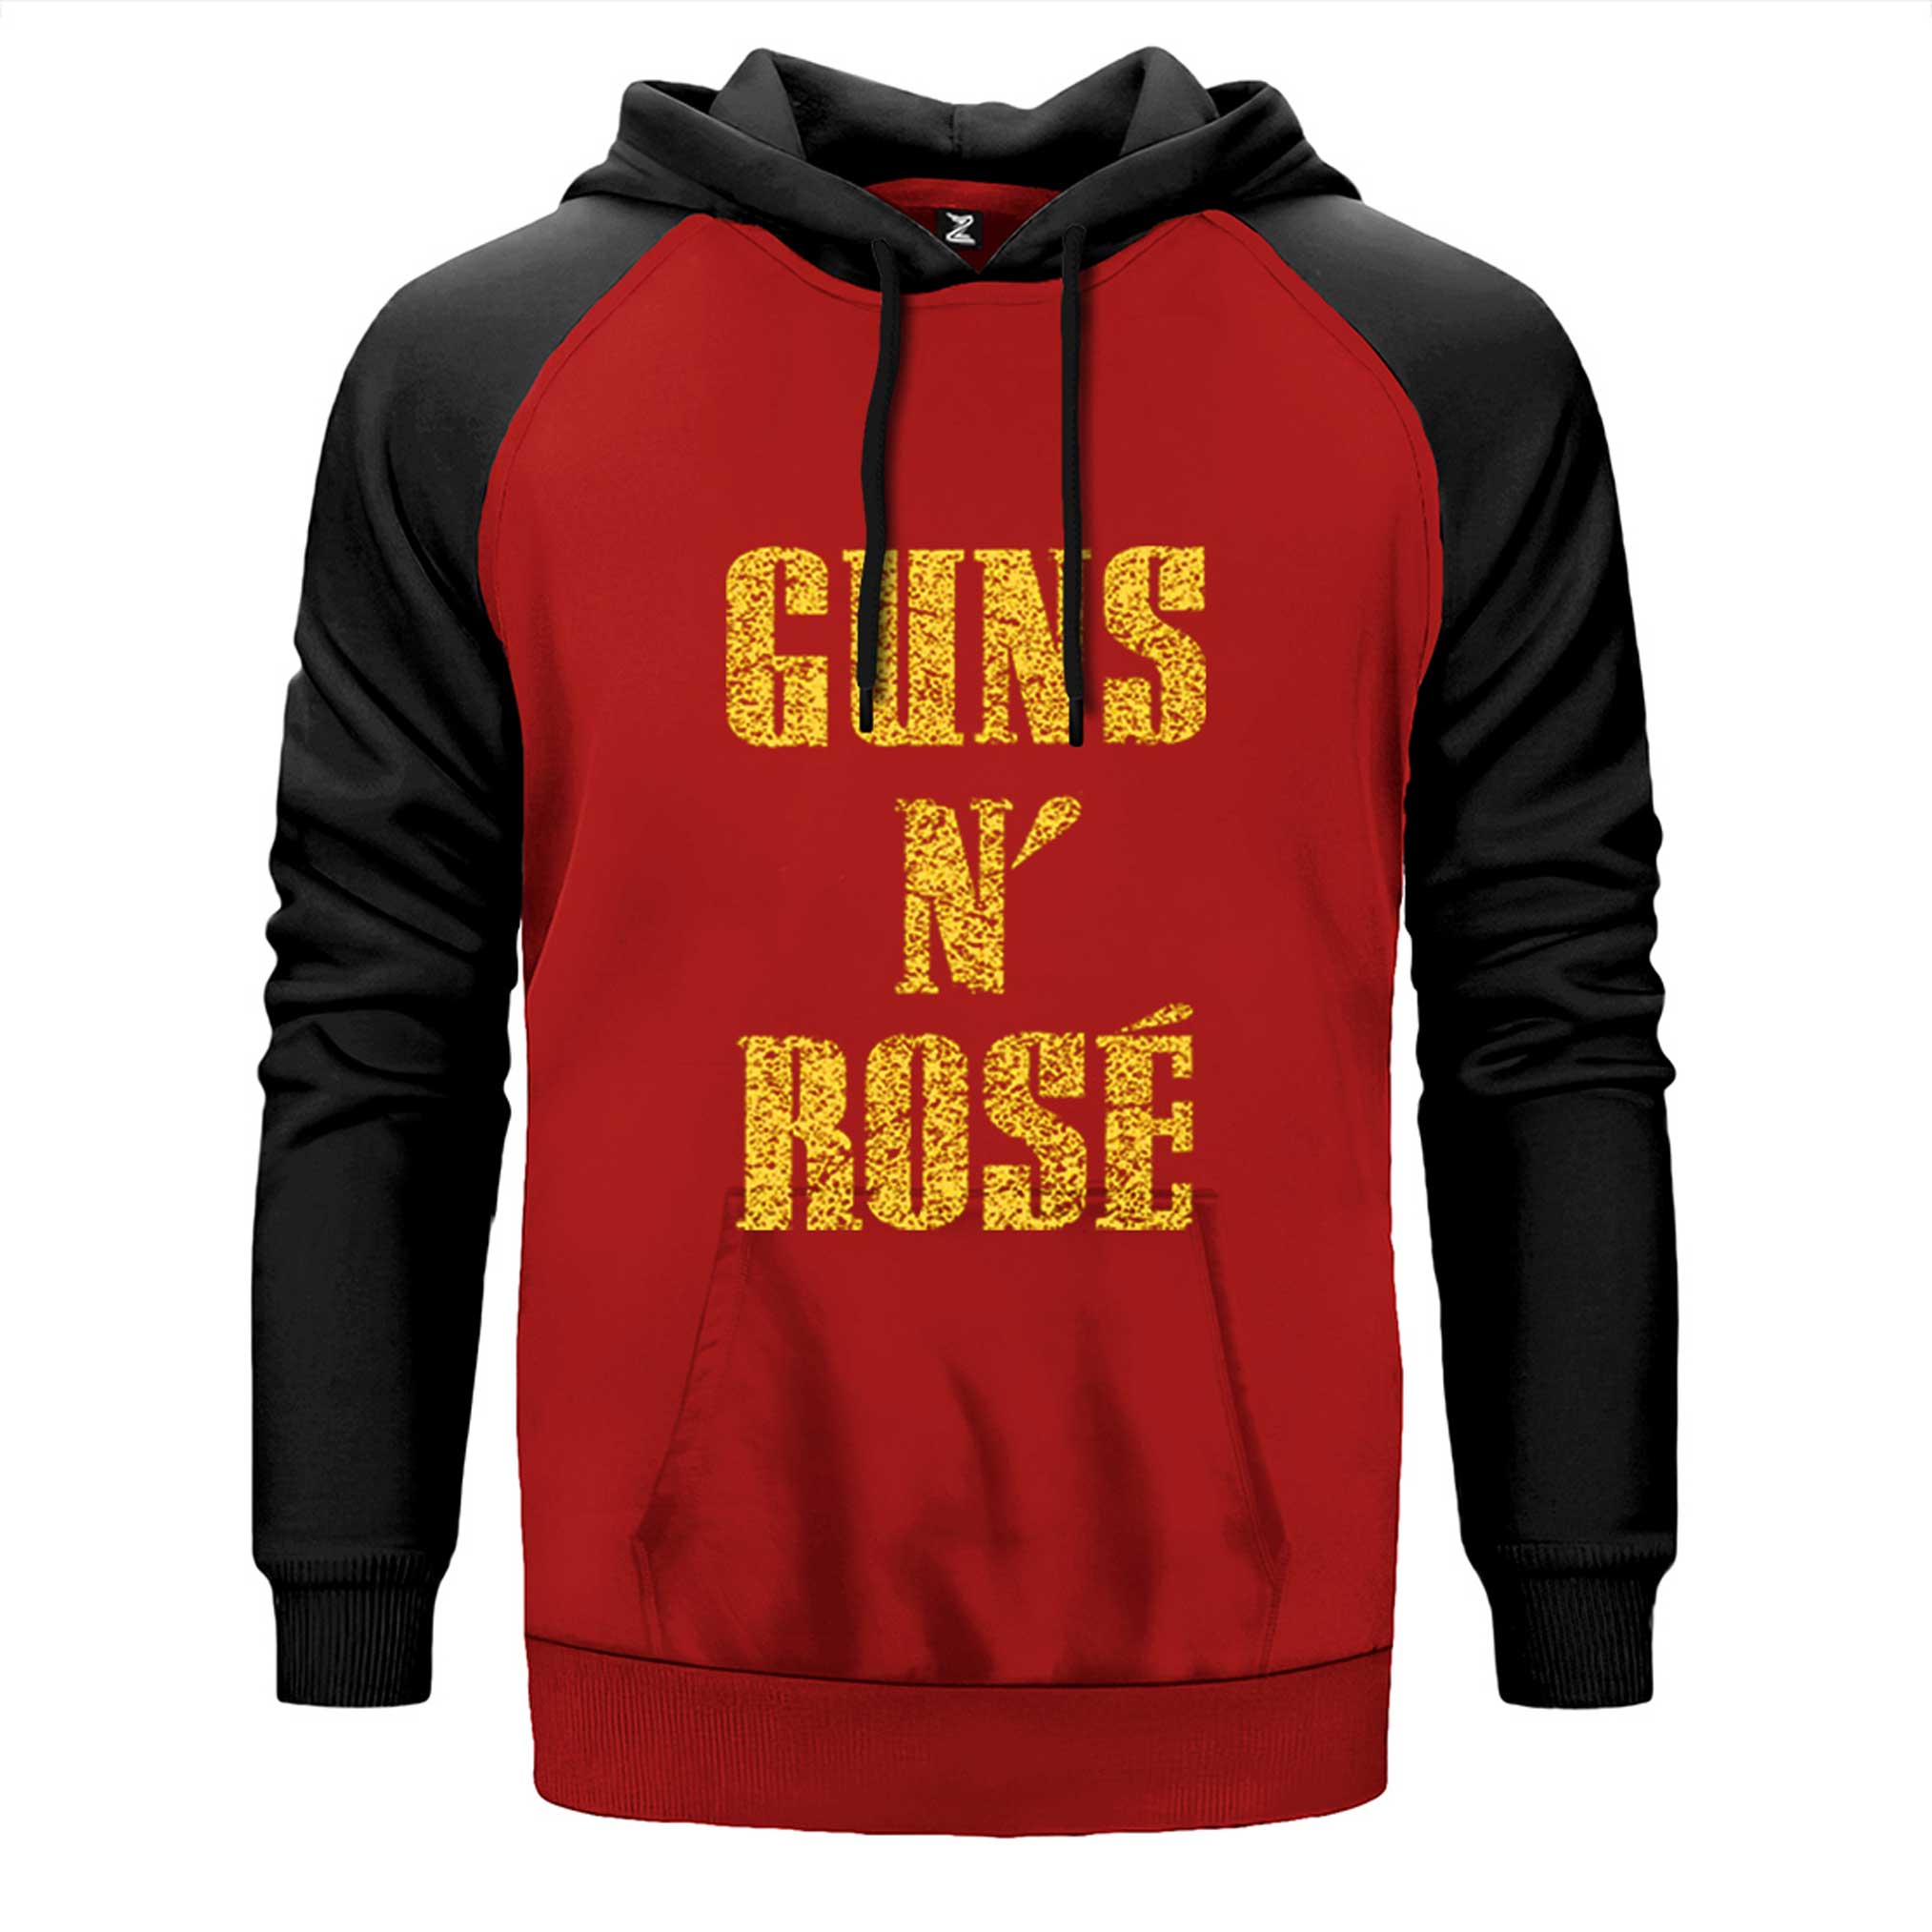 Guns N Rose Text Yellow Çift Renk Reglan Kol Sweatshirt